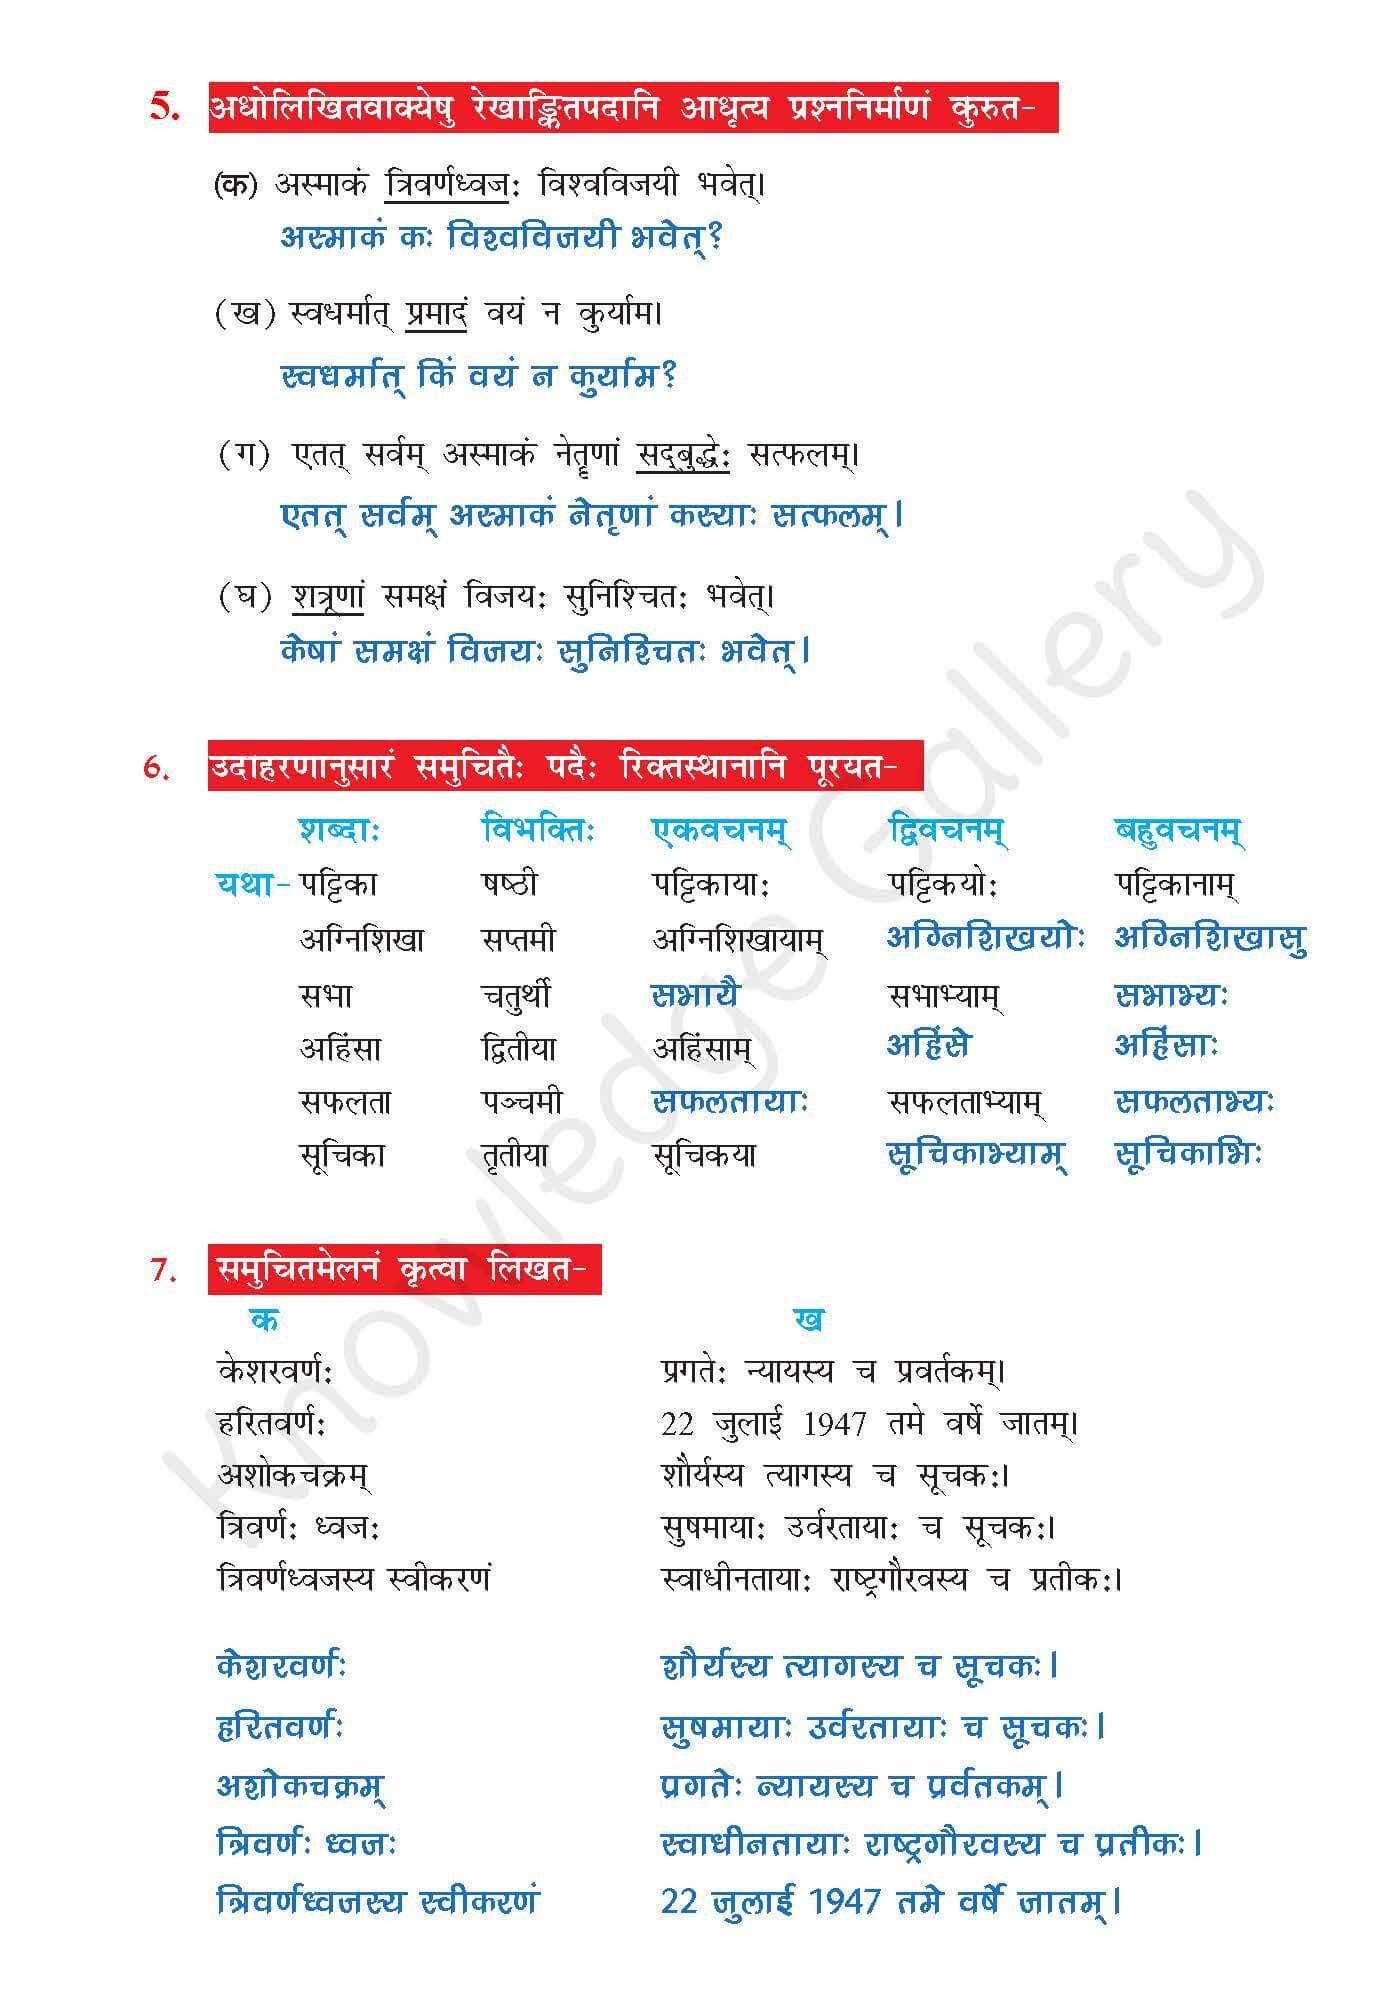 NCERT Solution For Class 7 Sanskrit Chapter 7 part 5